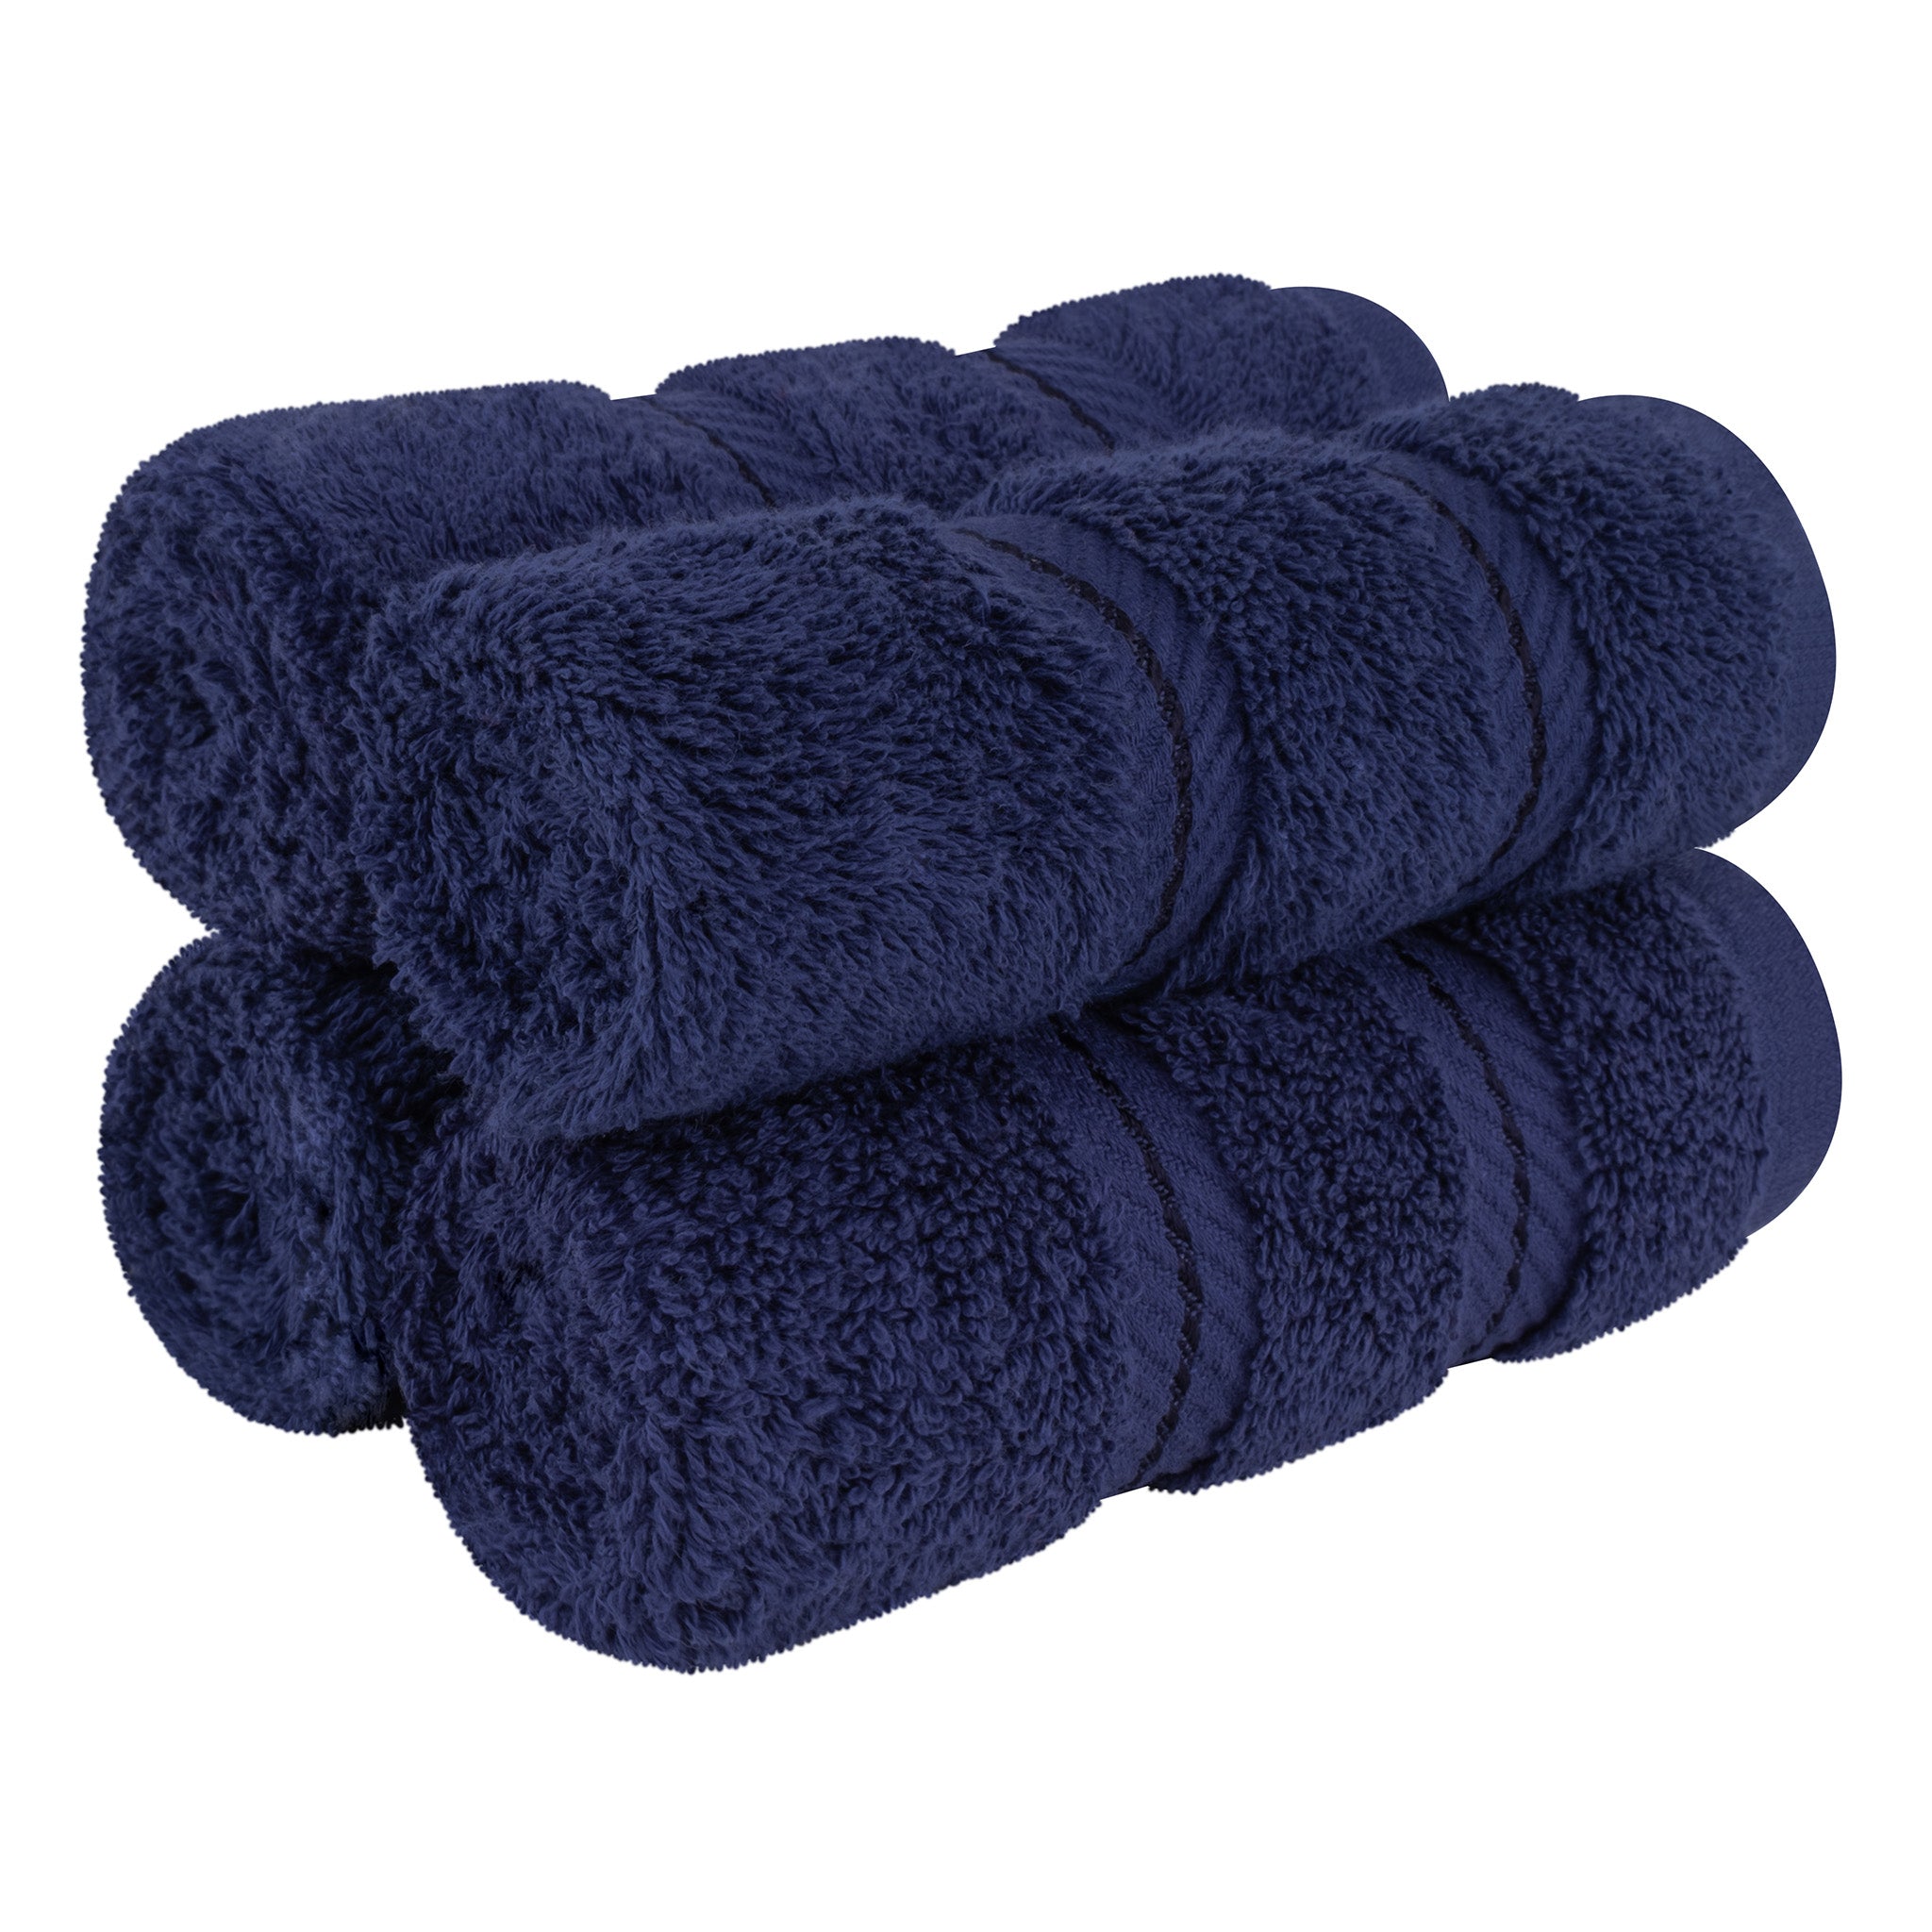 American Soft Linen 100% Turkish Cotton 4 Piece Washcloth Set navy-blue-1